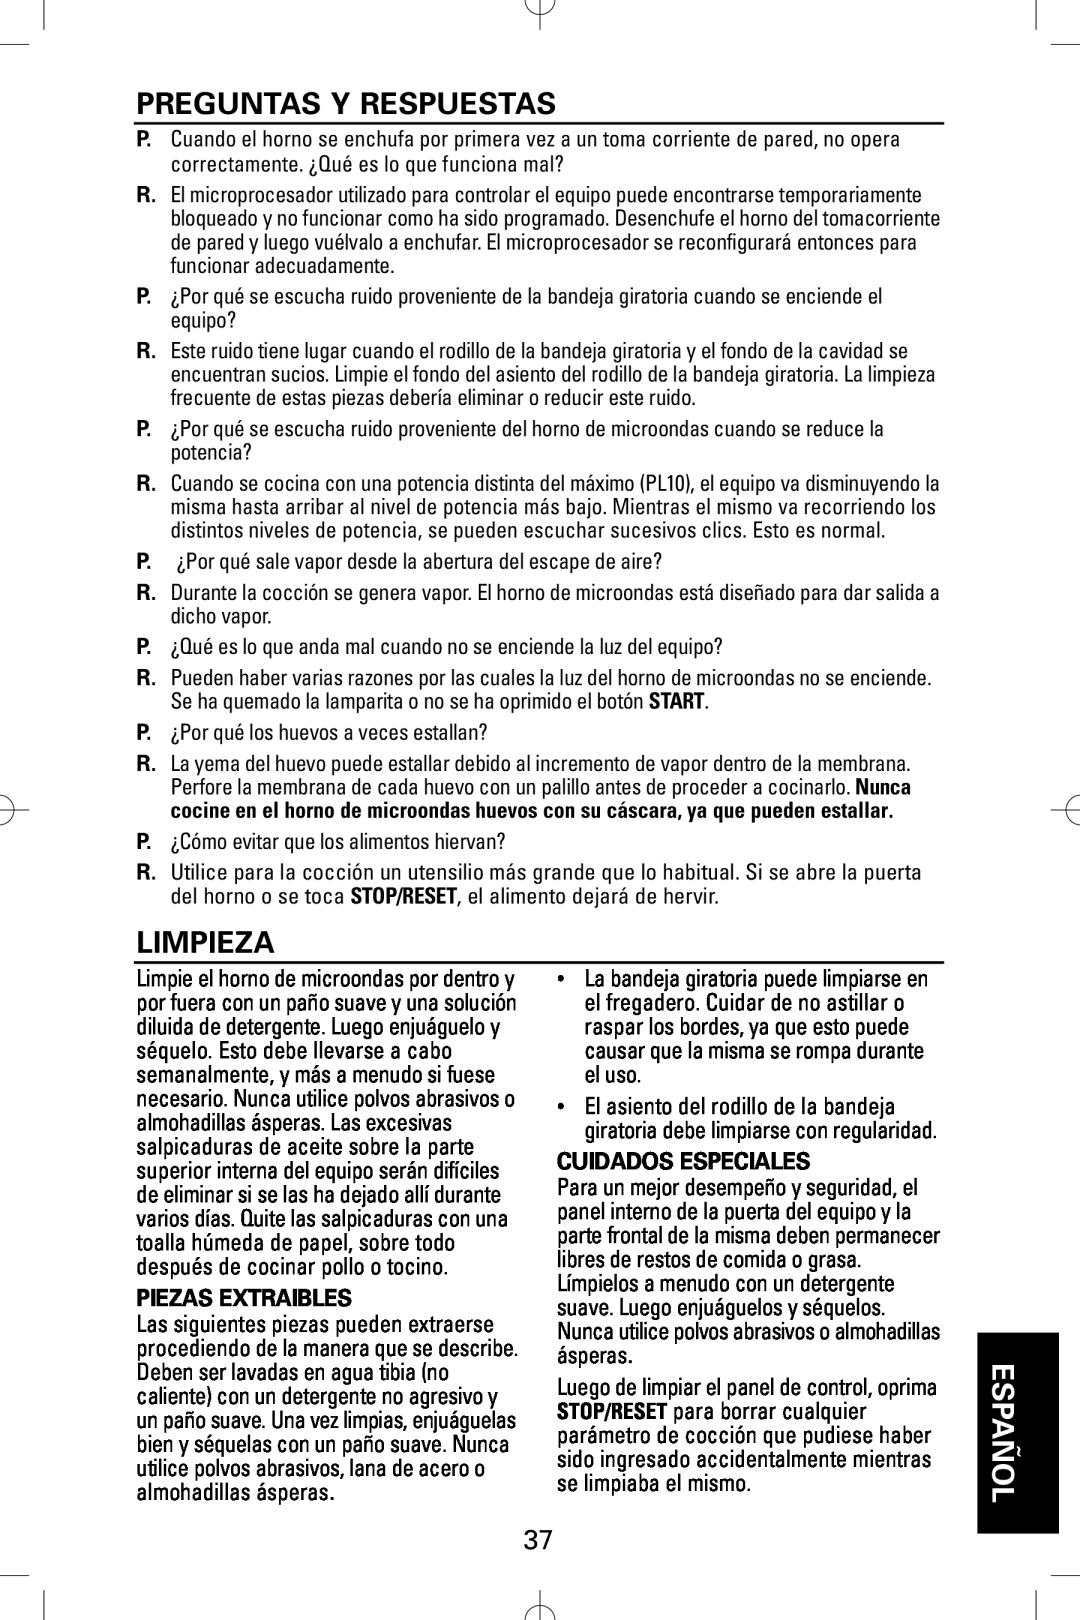 Sanyo EM-S5002W instruction manual Preguntas Y Respuestas, Limpieza, Piezas Extraibles, Cuidados Especiales, Español 